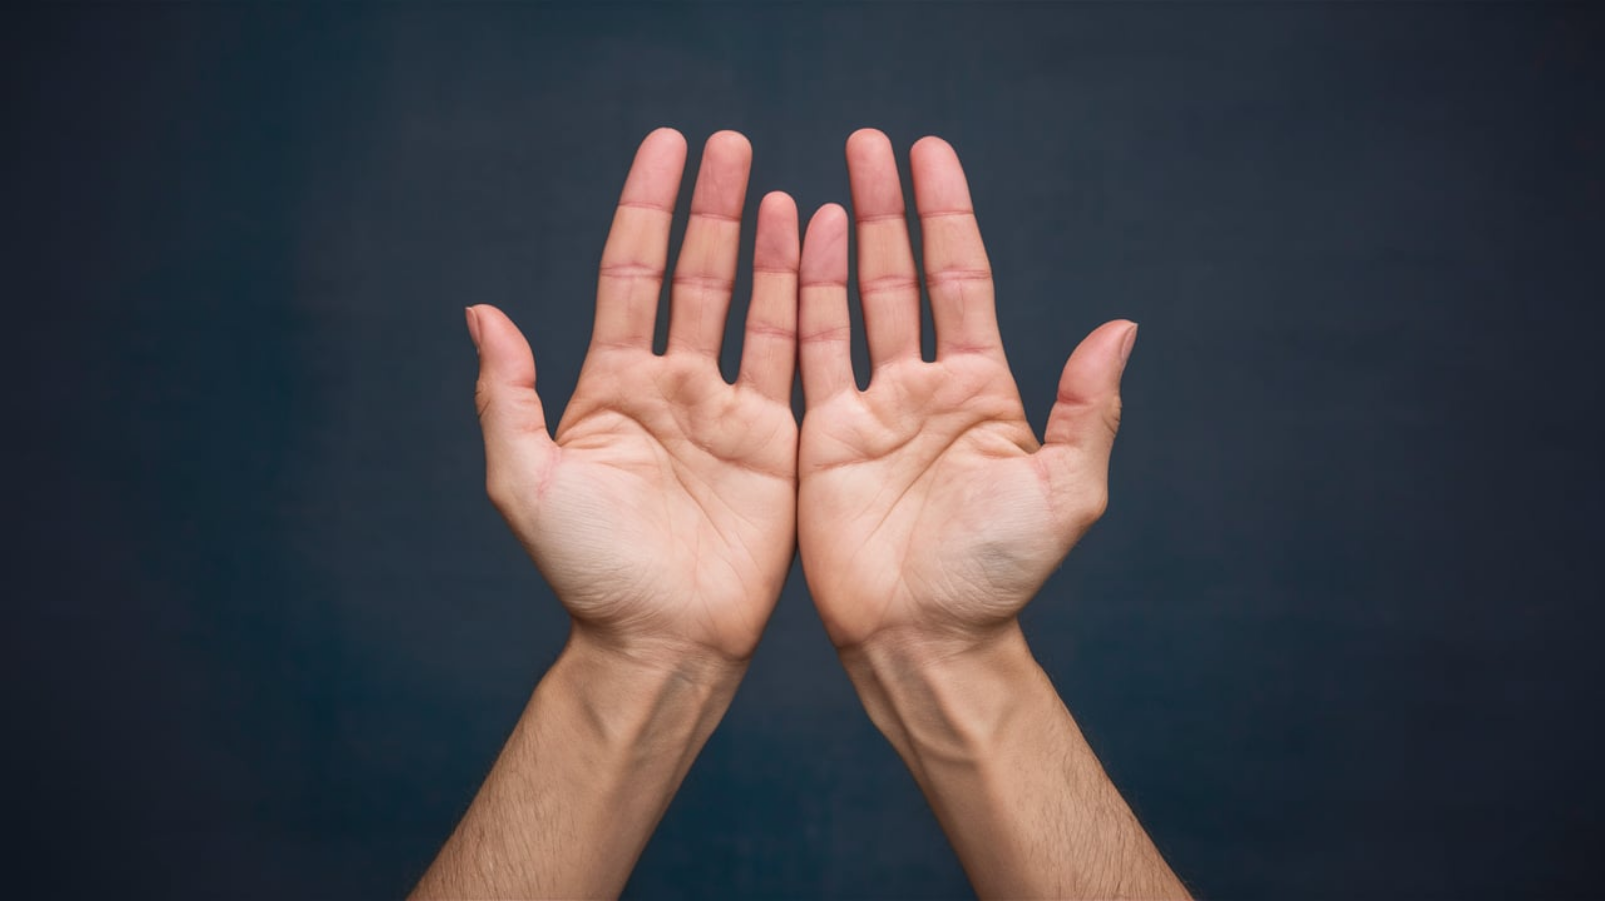 손가락마디통증을 일으키는 주요 원인과 증상은 무엇일까?